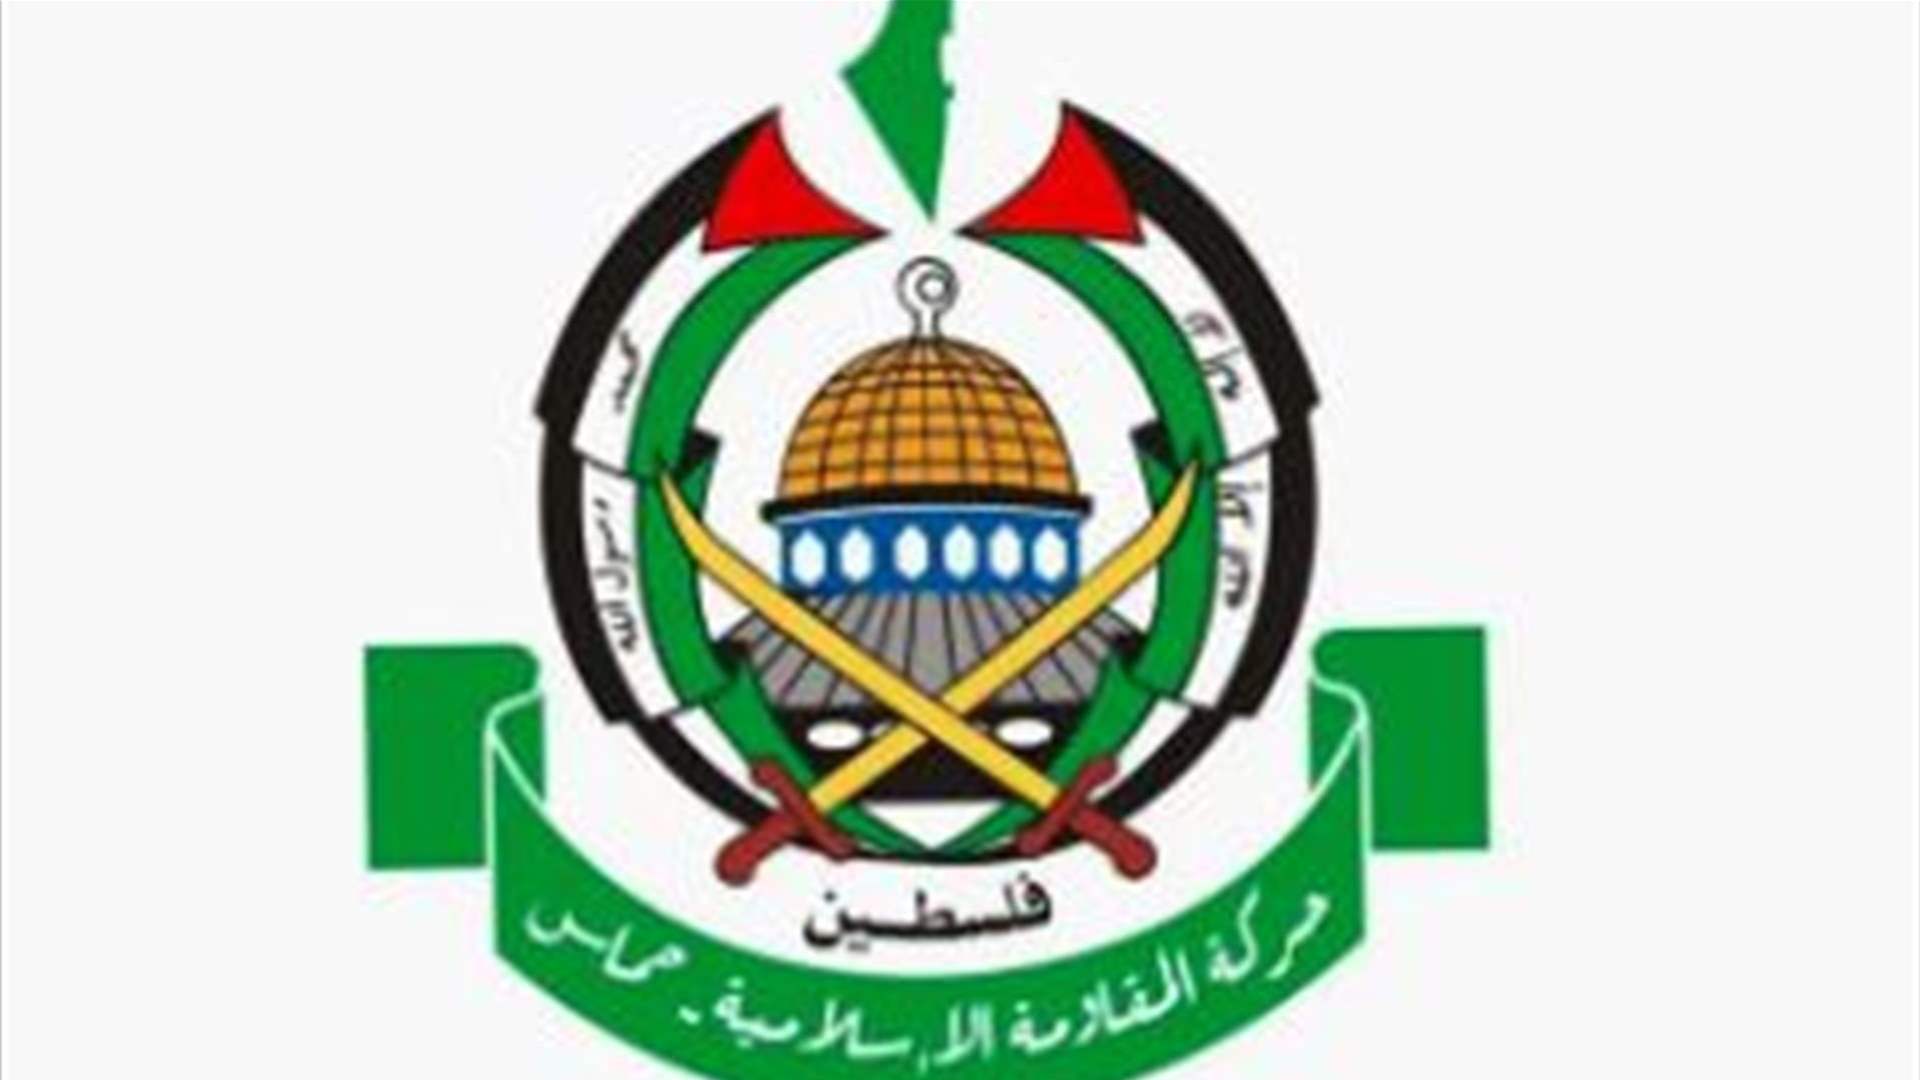  اعلان من حركة حماس: سنلتزم بموقفنا الأصلي